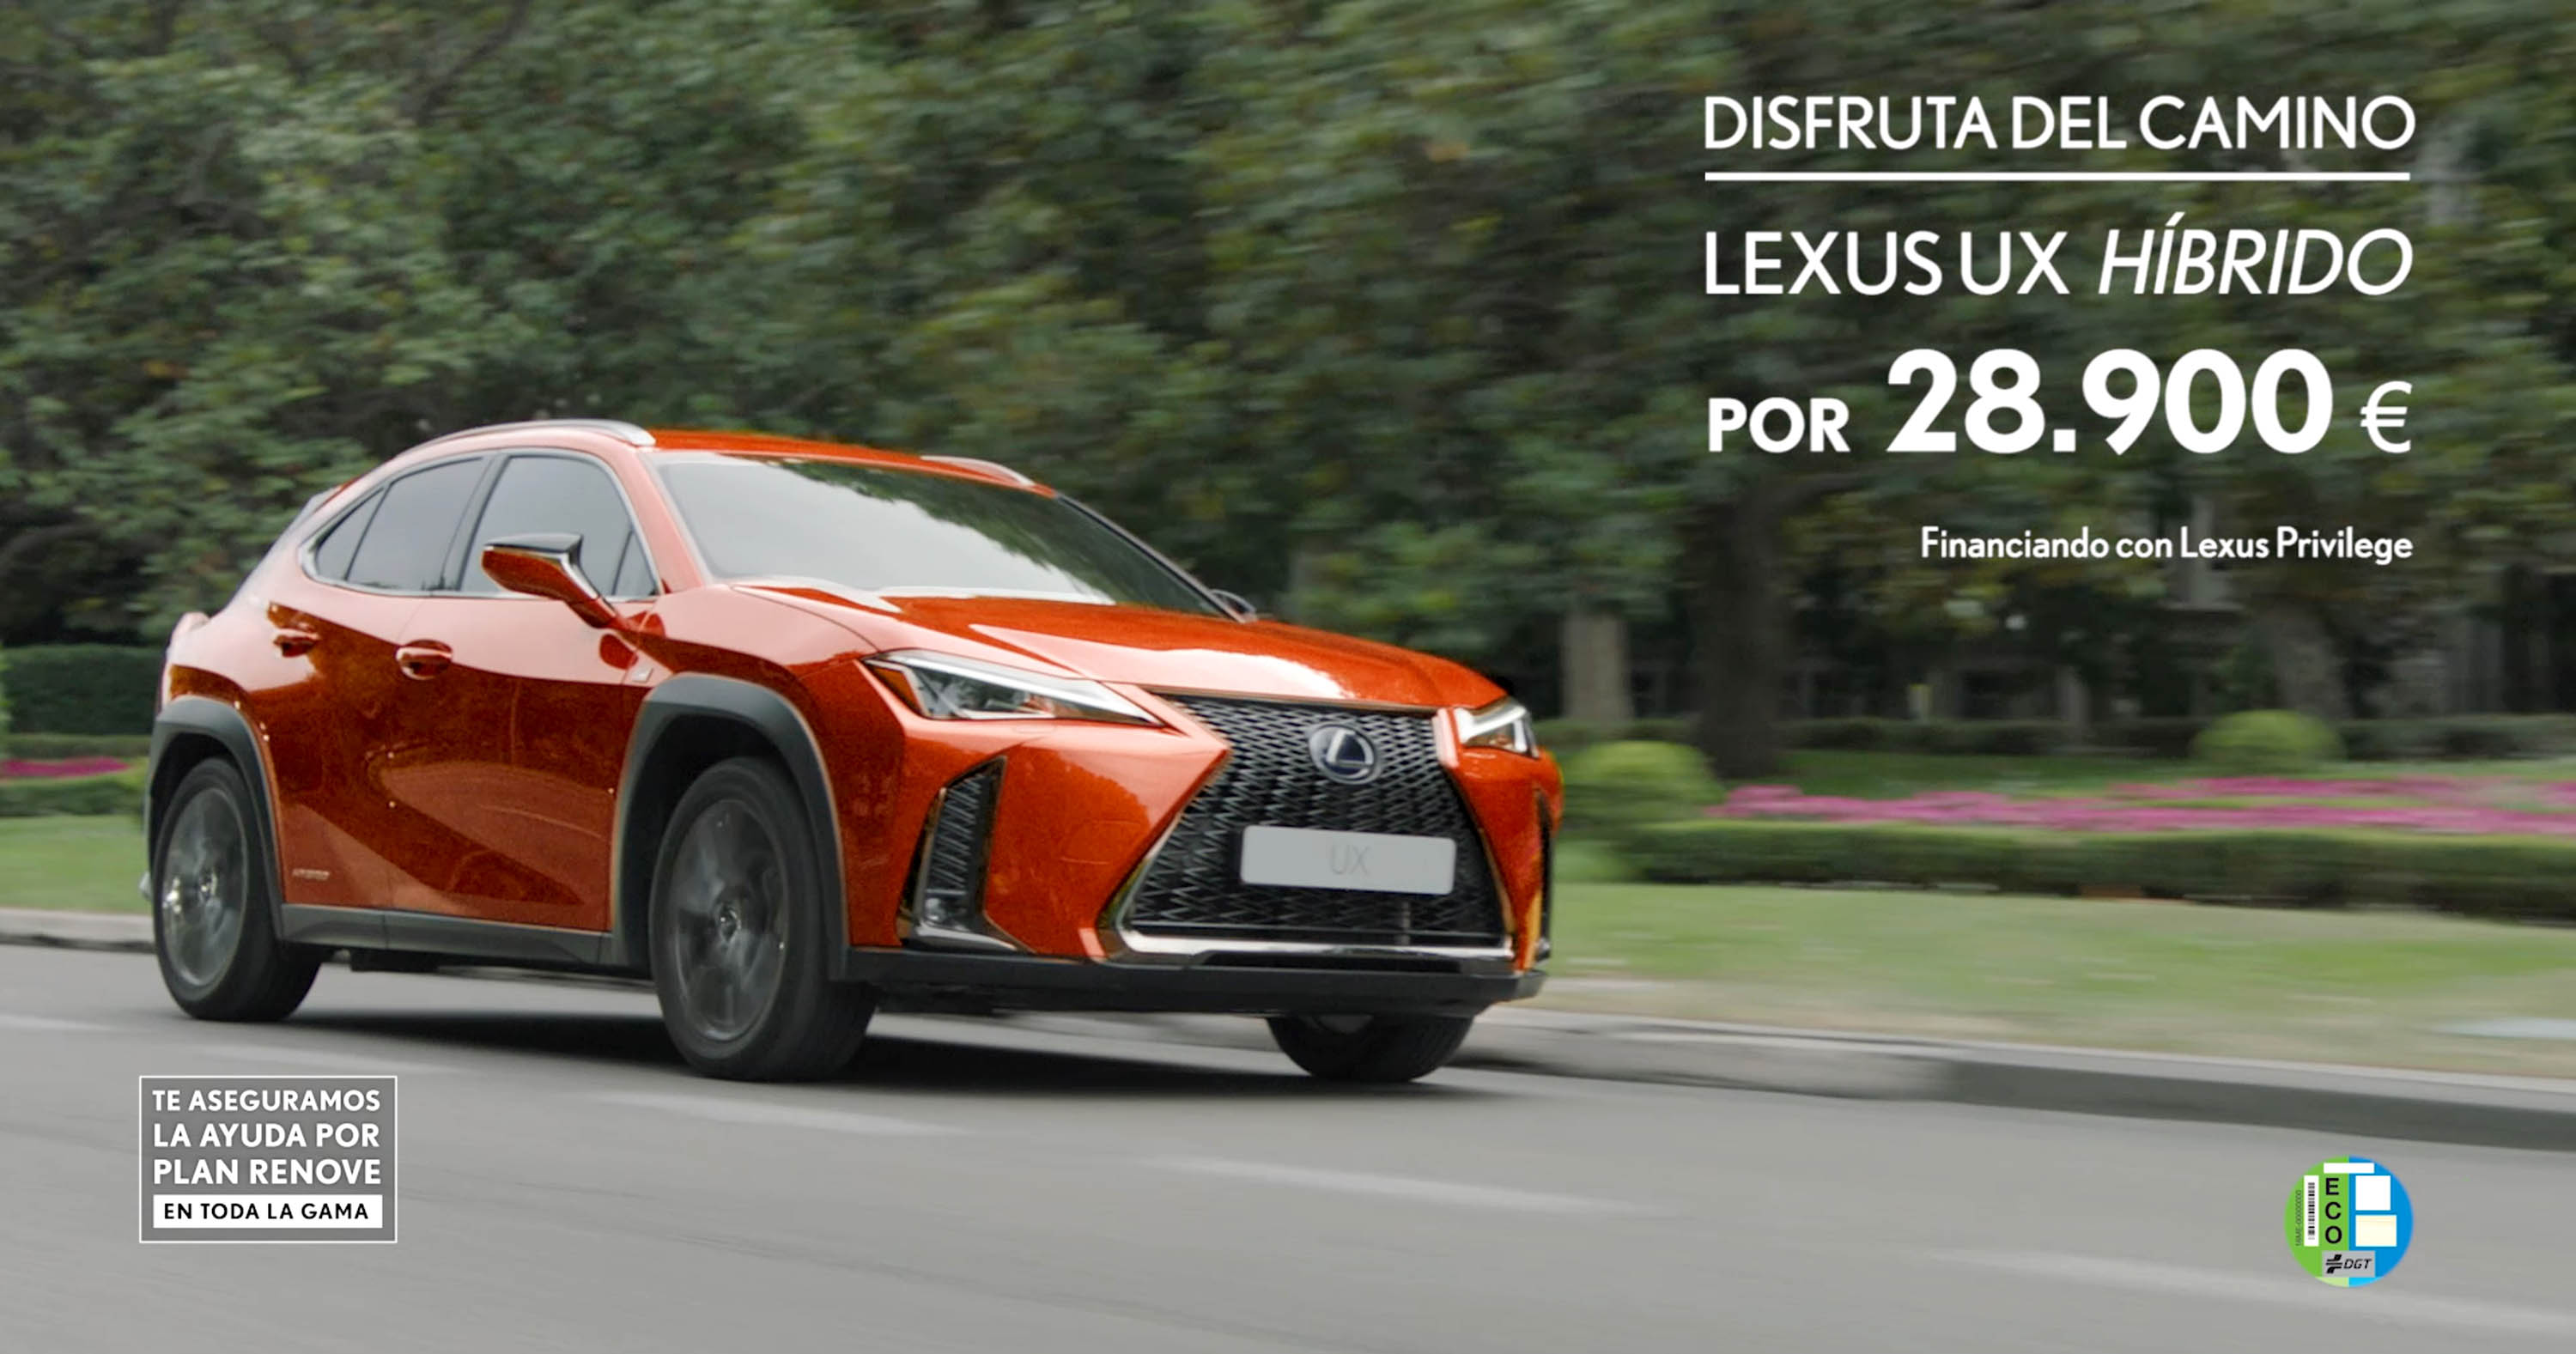 Video: Lexus lanza la nueva campaña del crossover premium híbrido UX 250h a ritmo de Queen